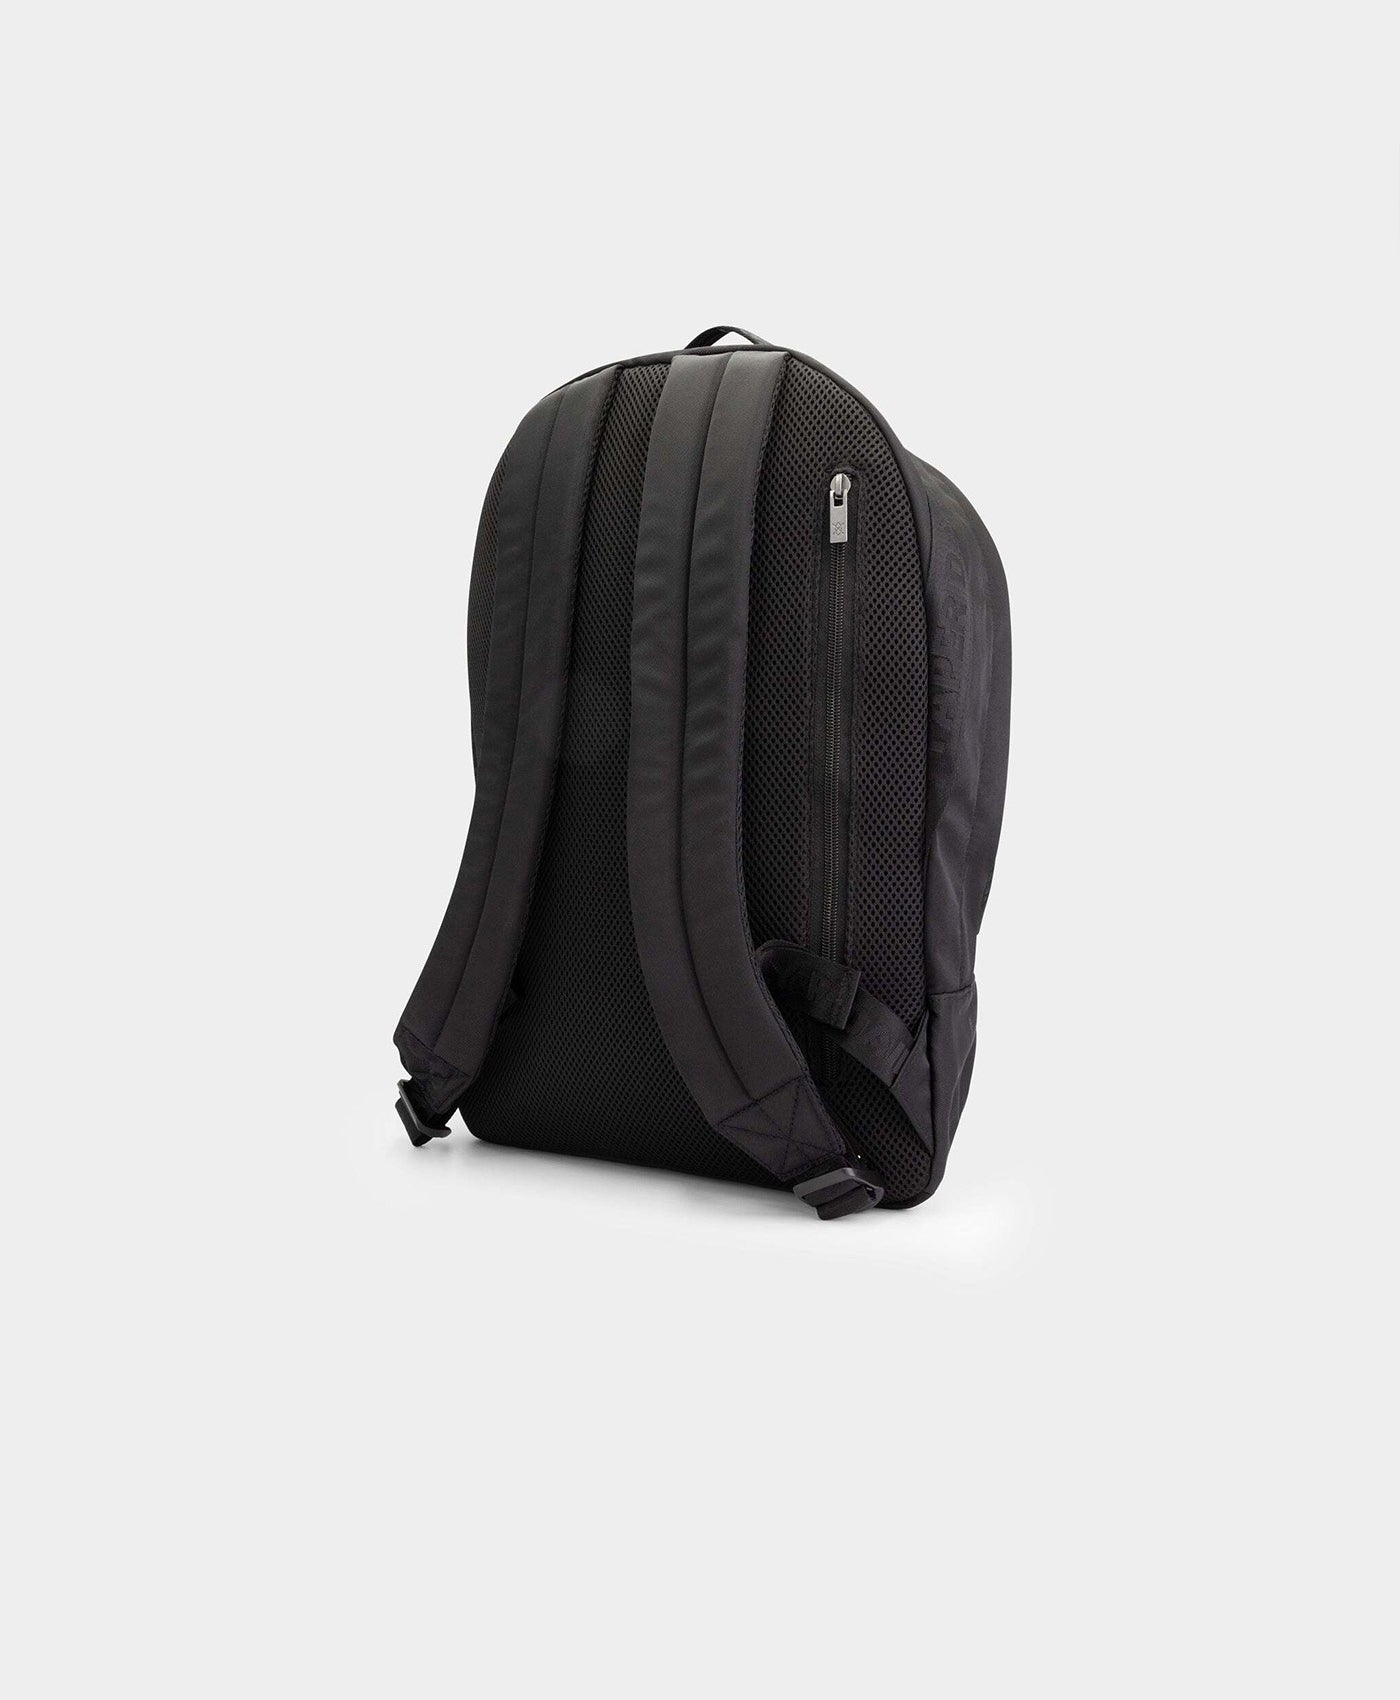 DP - Black Mupak Backpack - Packshot - Rear